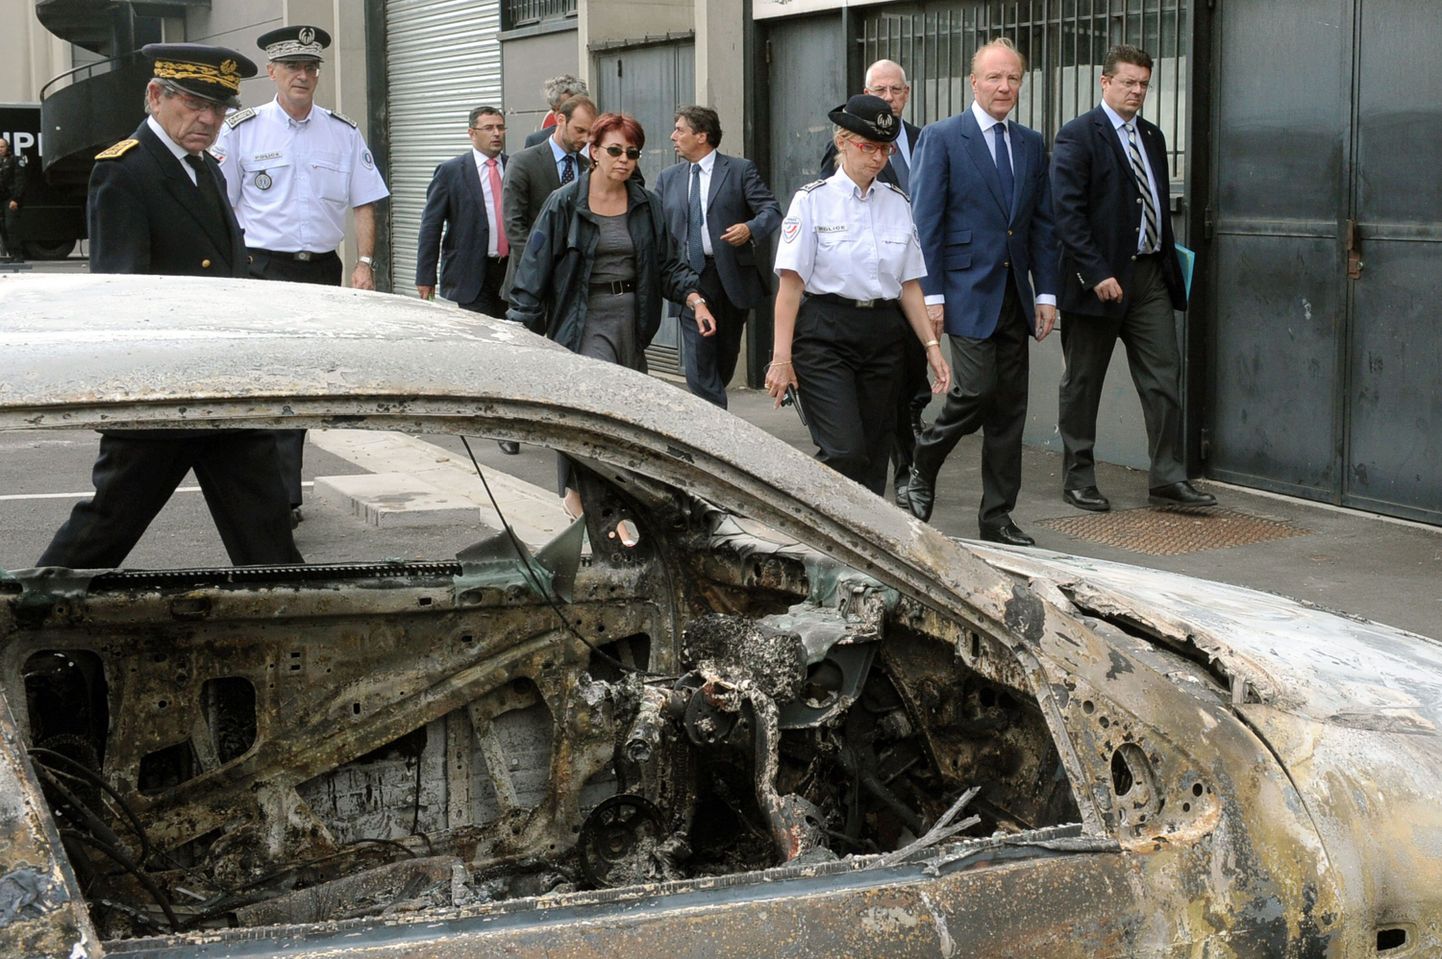 Prantsuse siseminister Brice Hortefeux (paremalt teine) kõndimas mööda rahutuste käigus süüdatud autost.